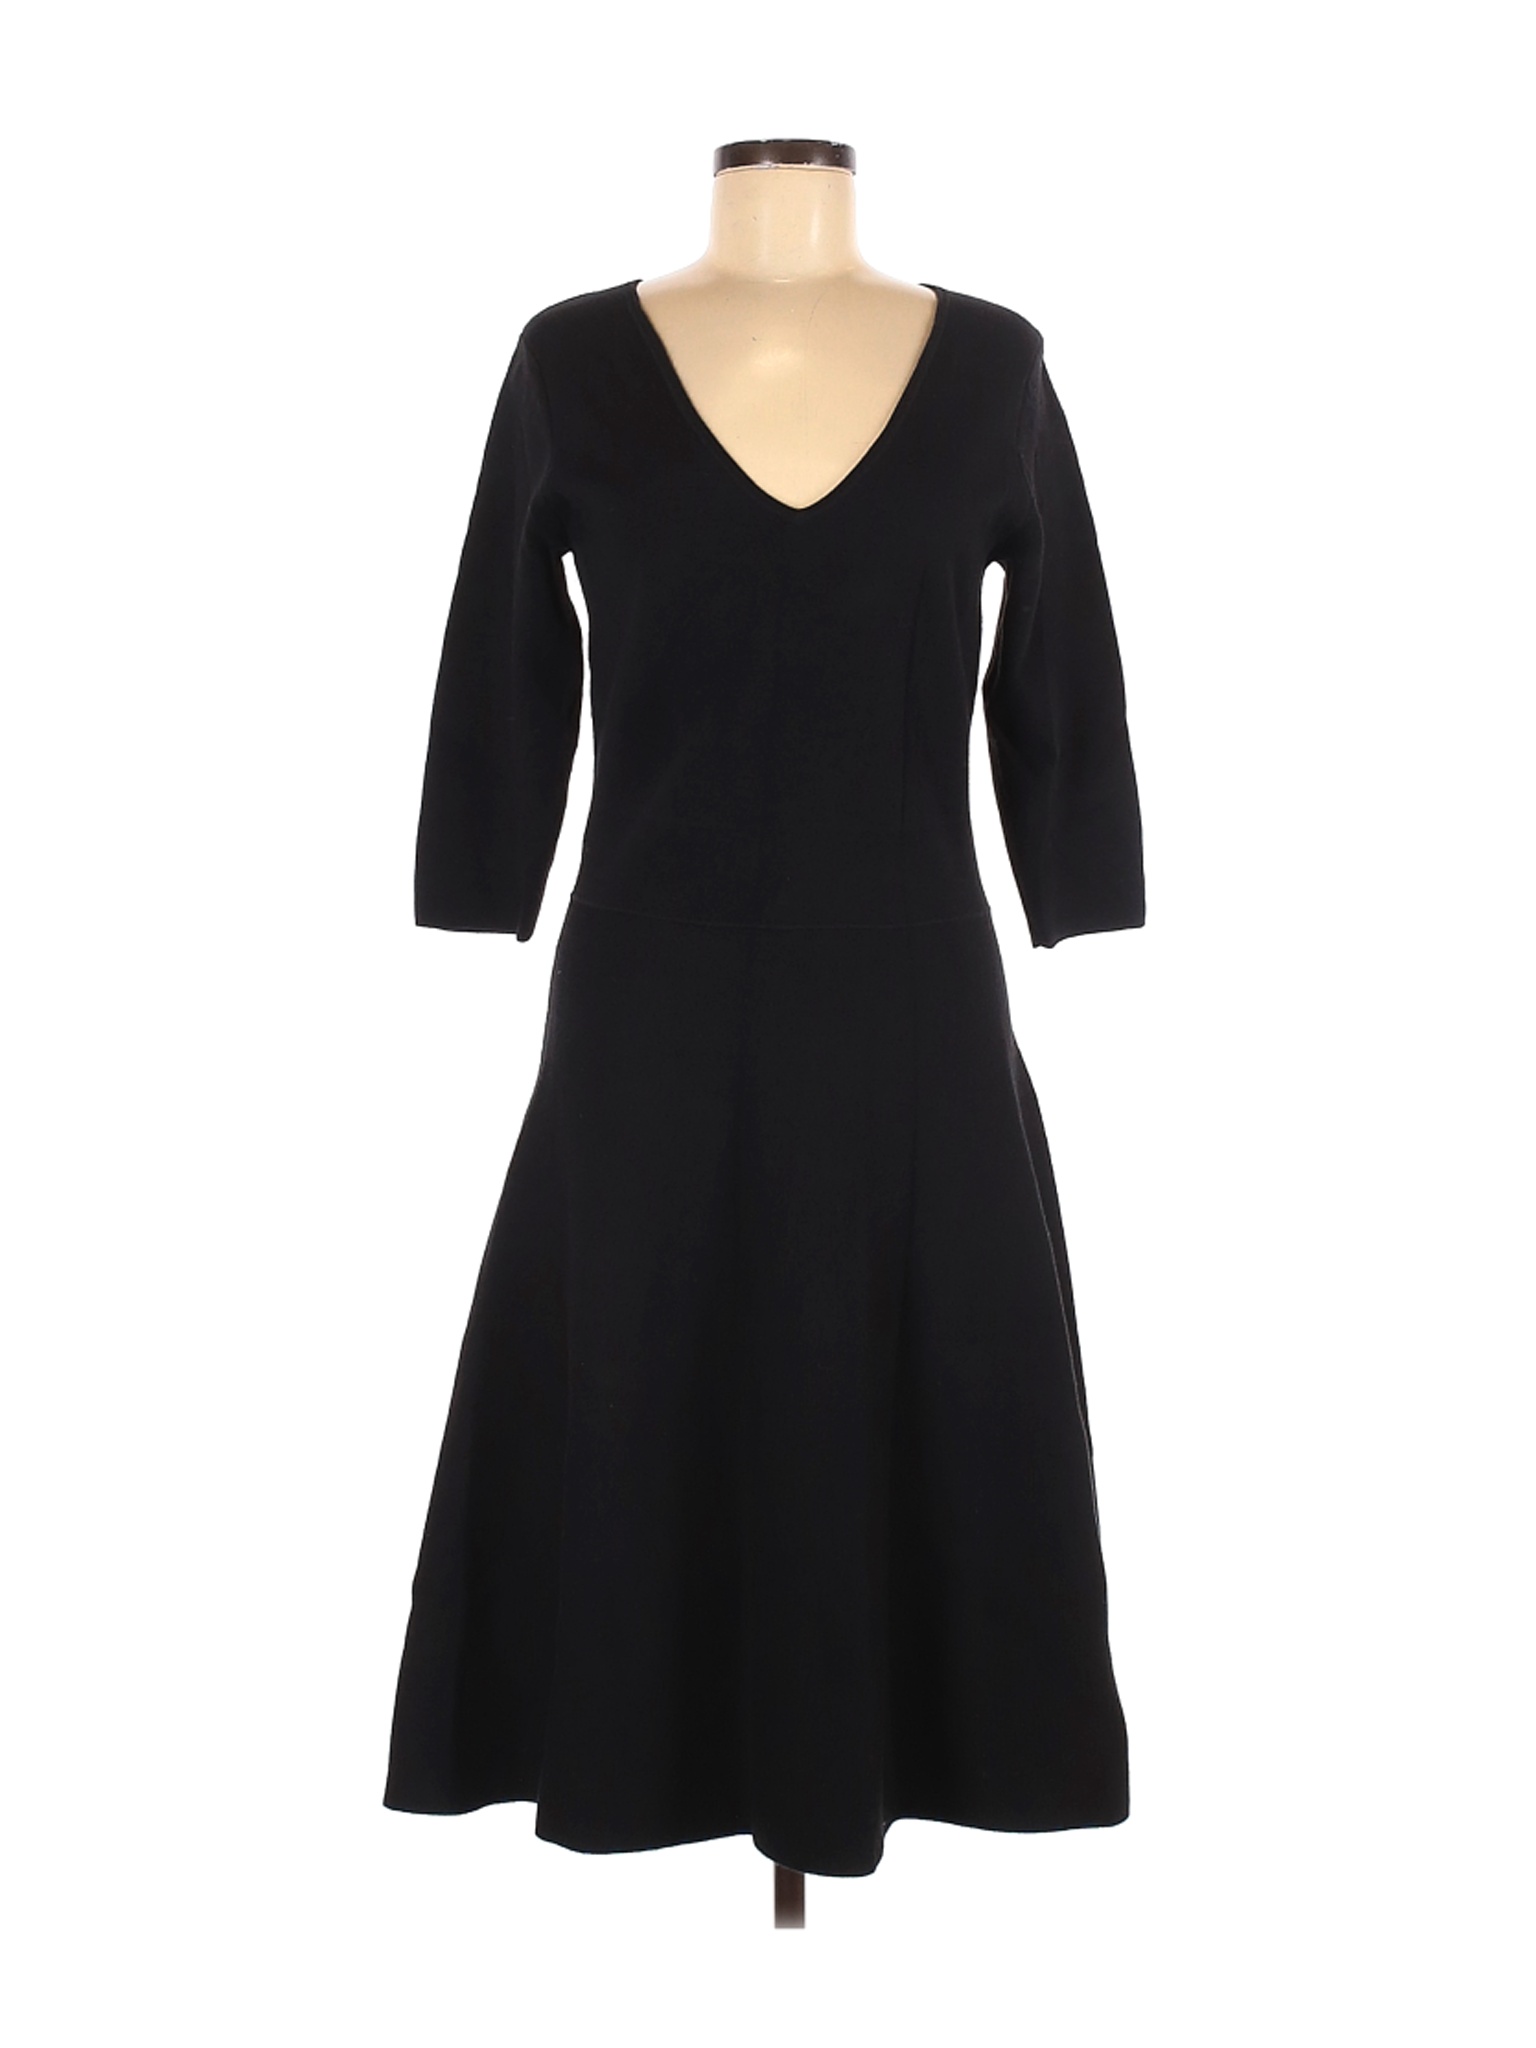 Boden Women Black Casual Dress 10 | eBay